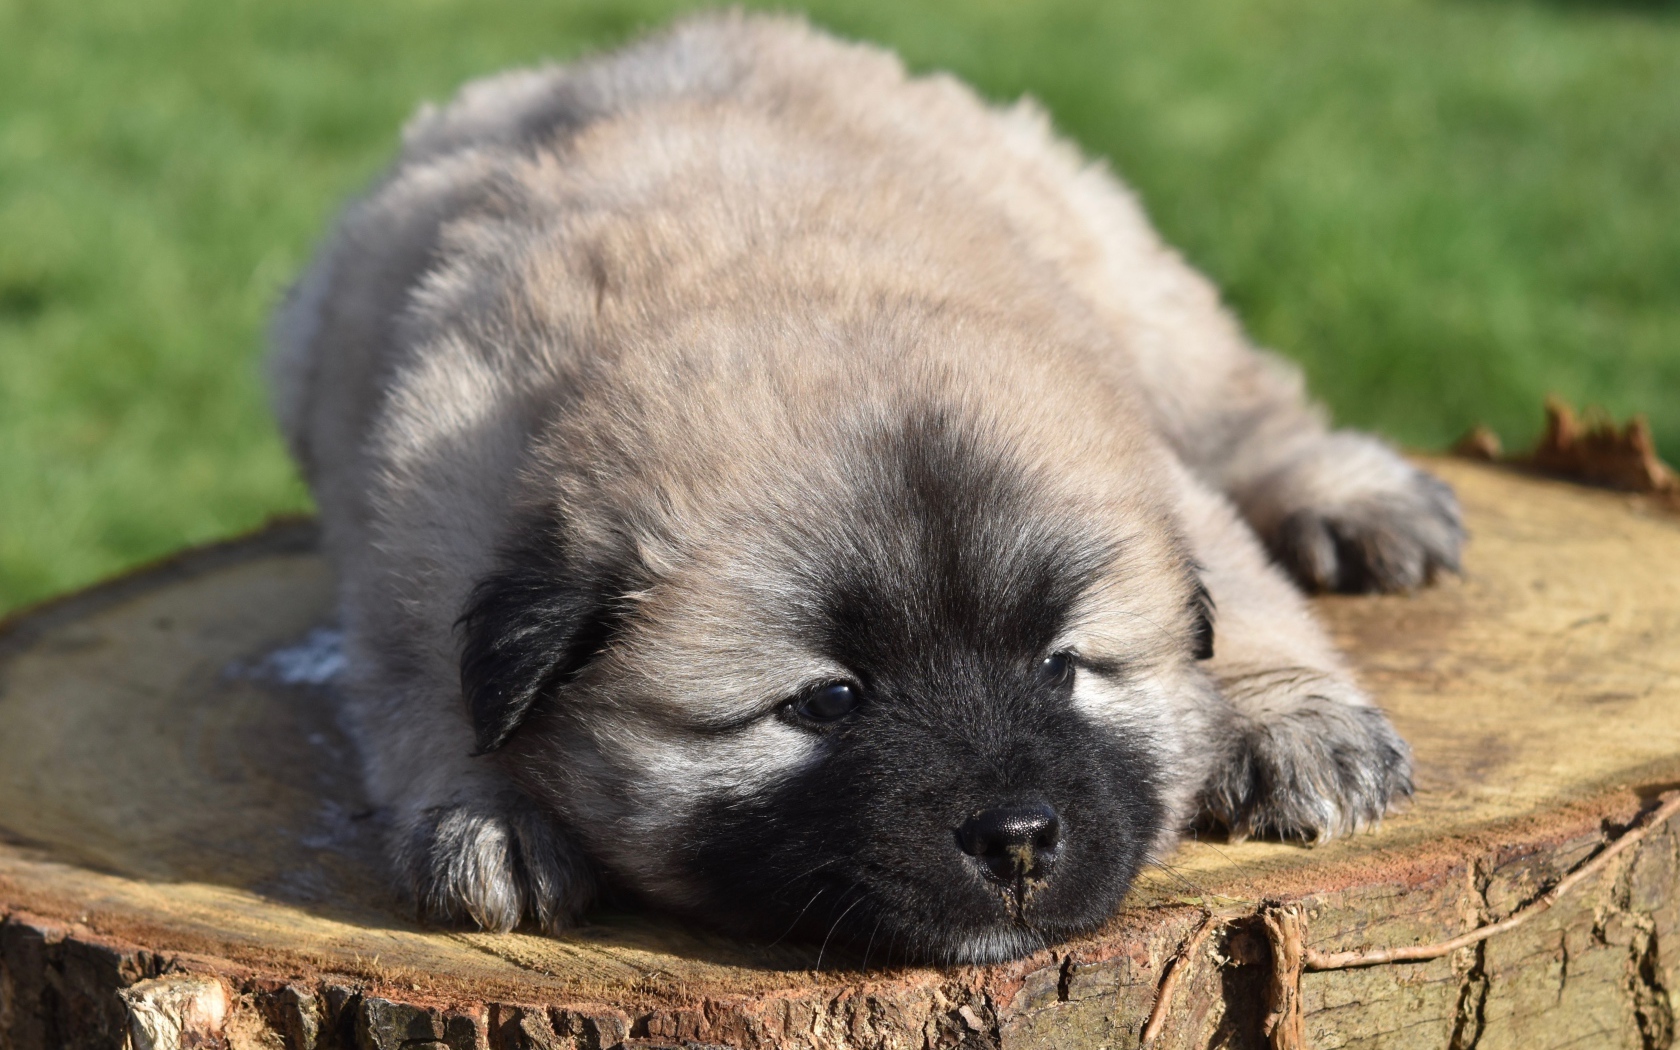 Eurasier puppy lies on a stump